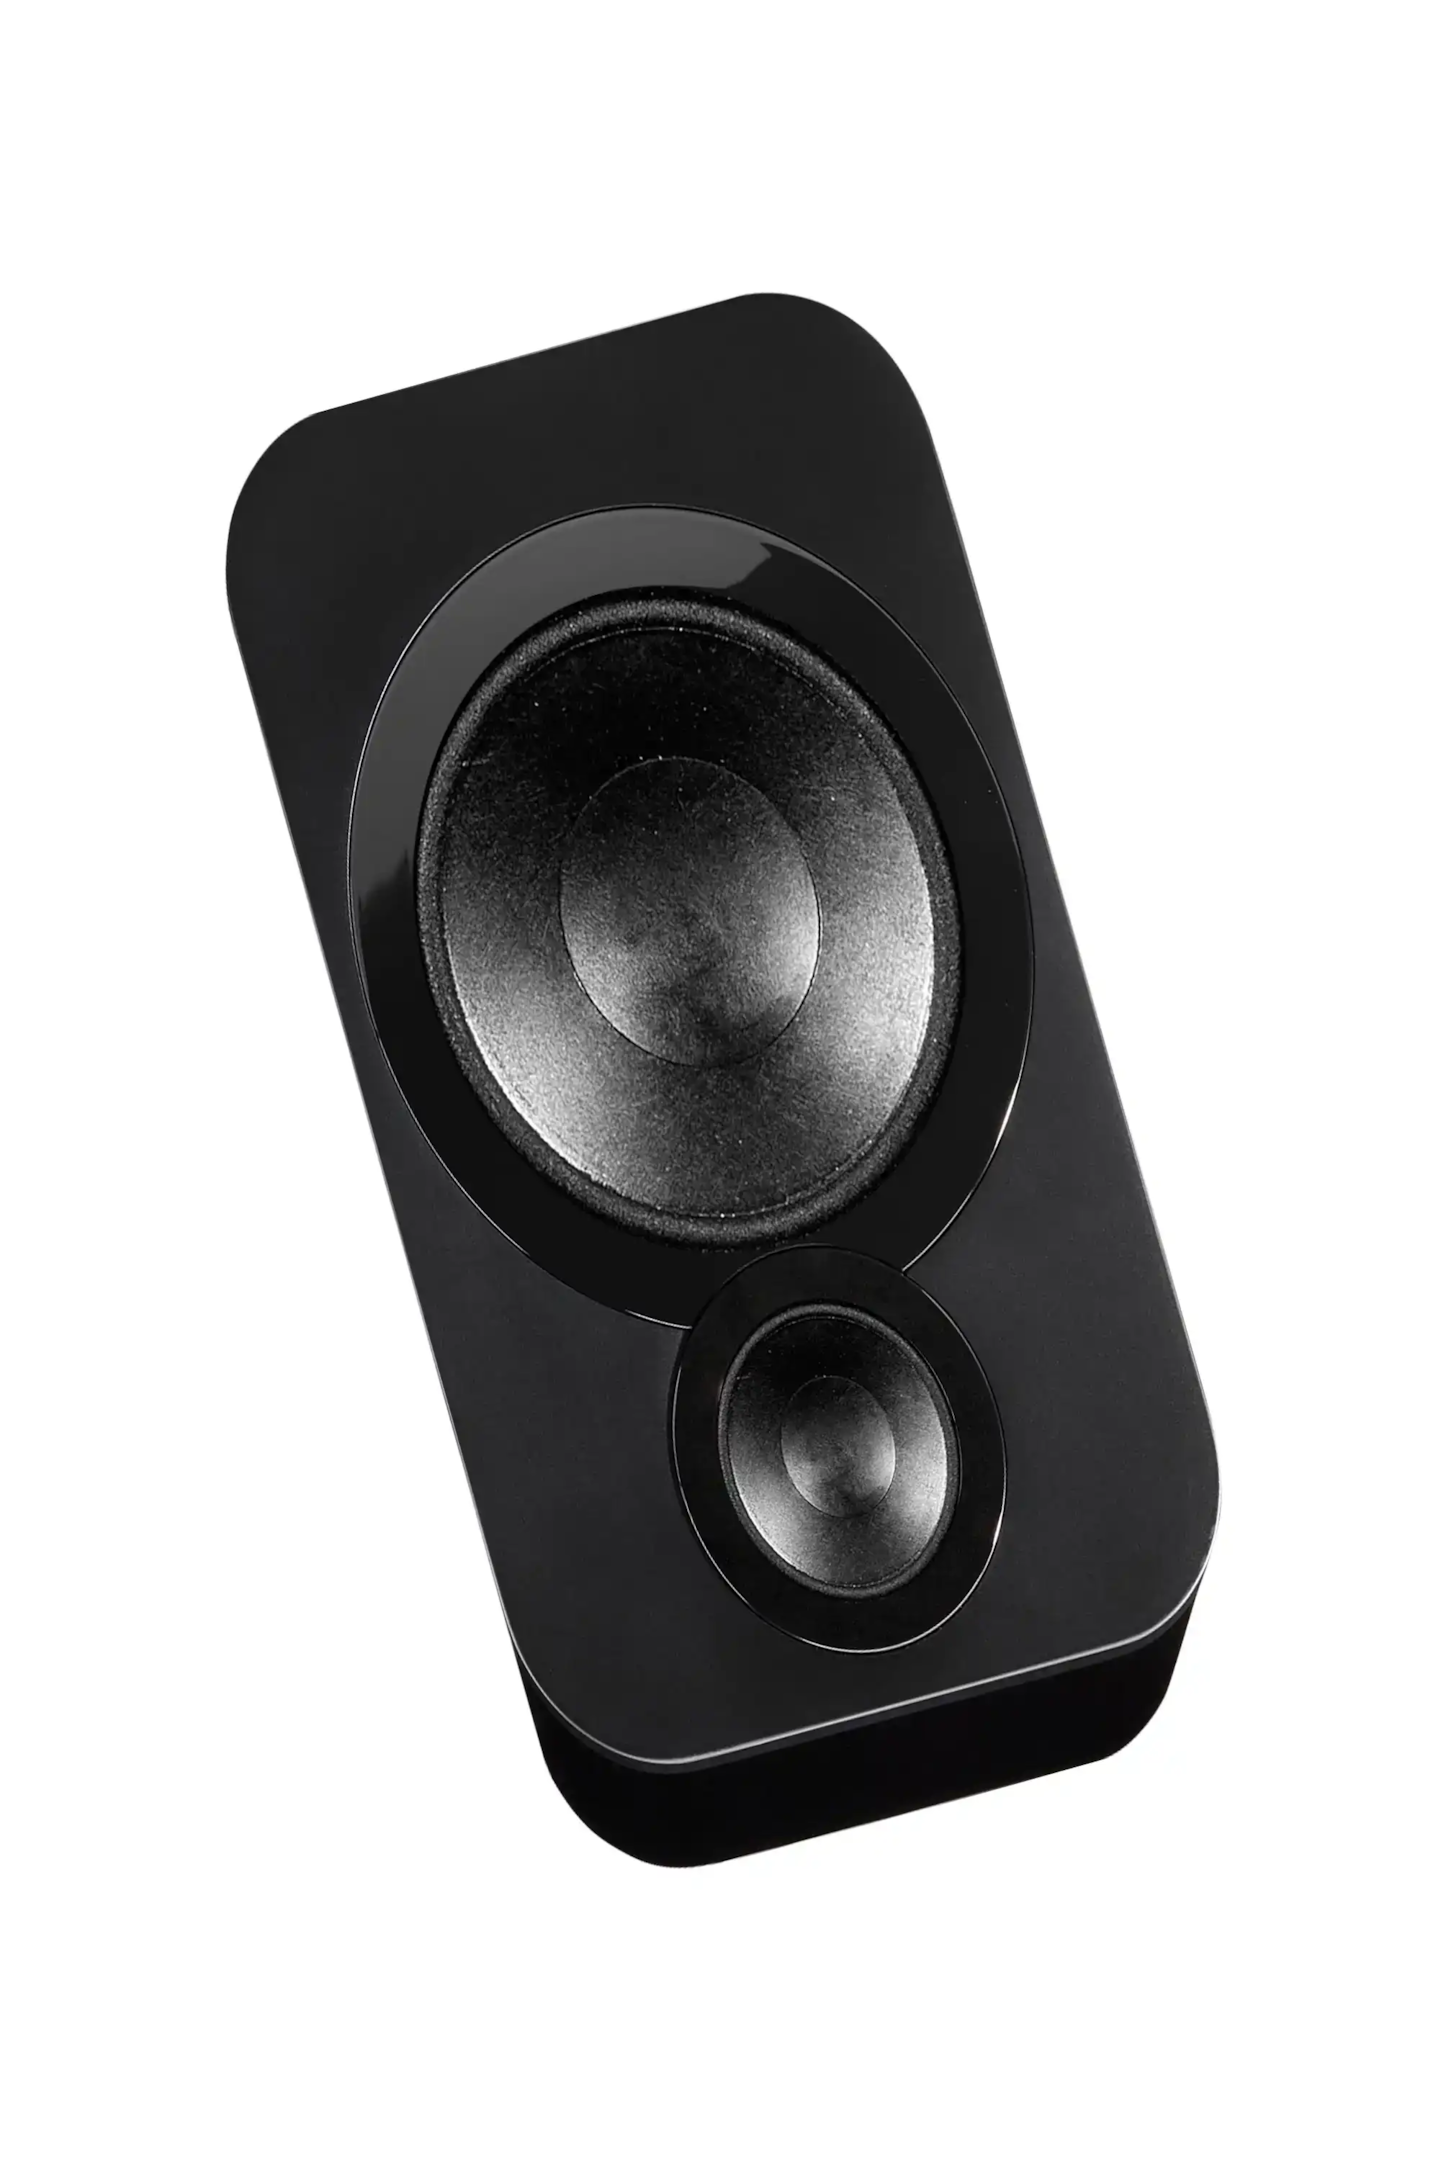 jbl speaker-draadloze luidspreker-Draadloze hoofdtelefoon-bluetooth luidspreker-bluetooth hoofdtelefoon